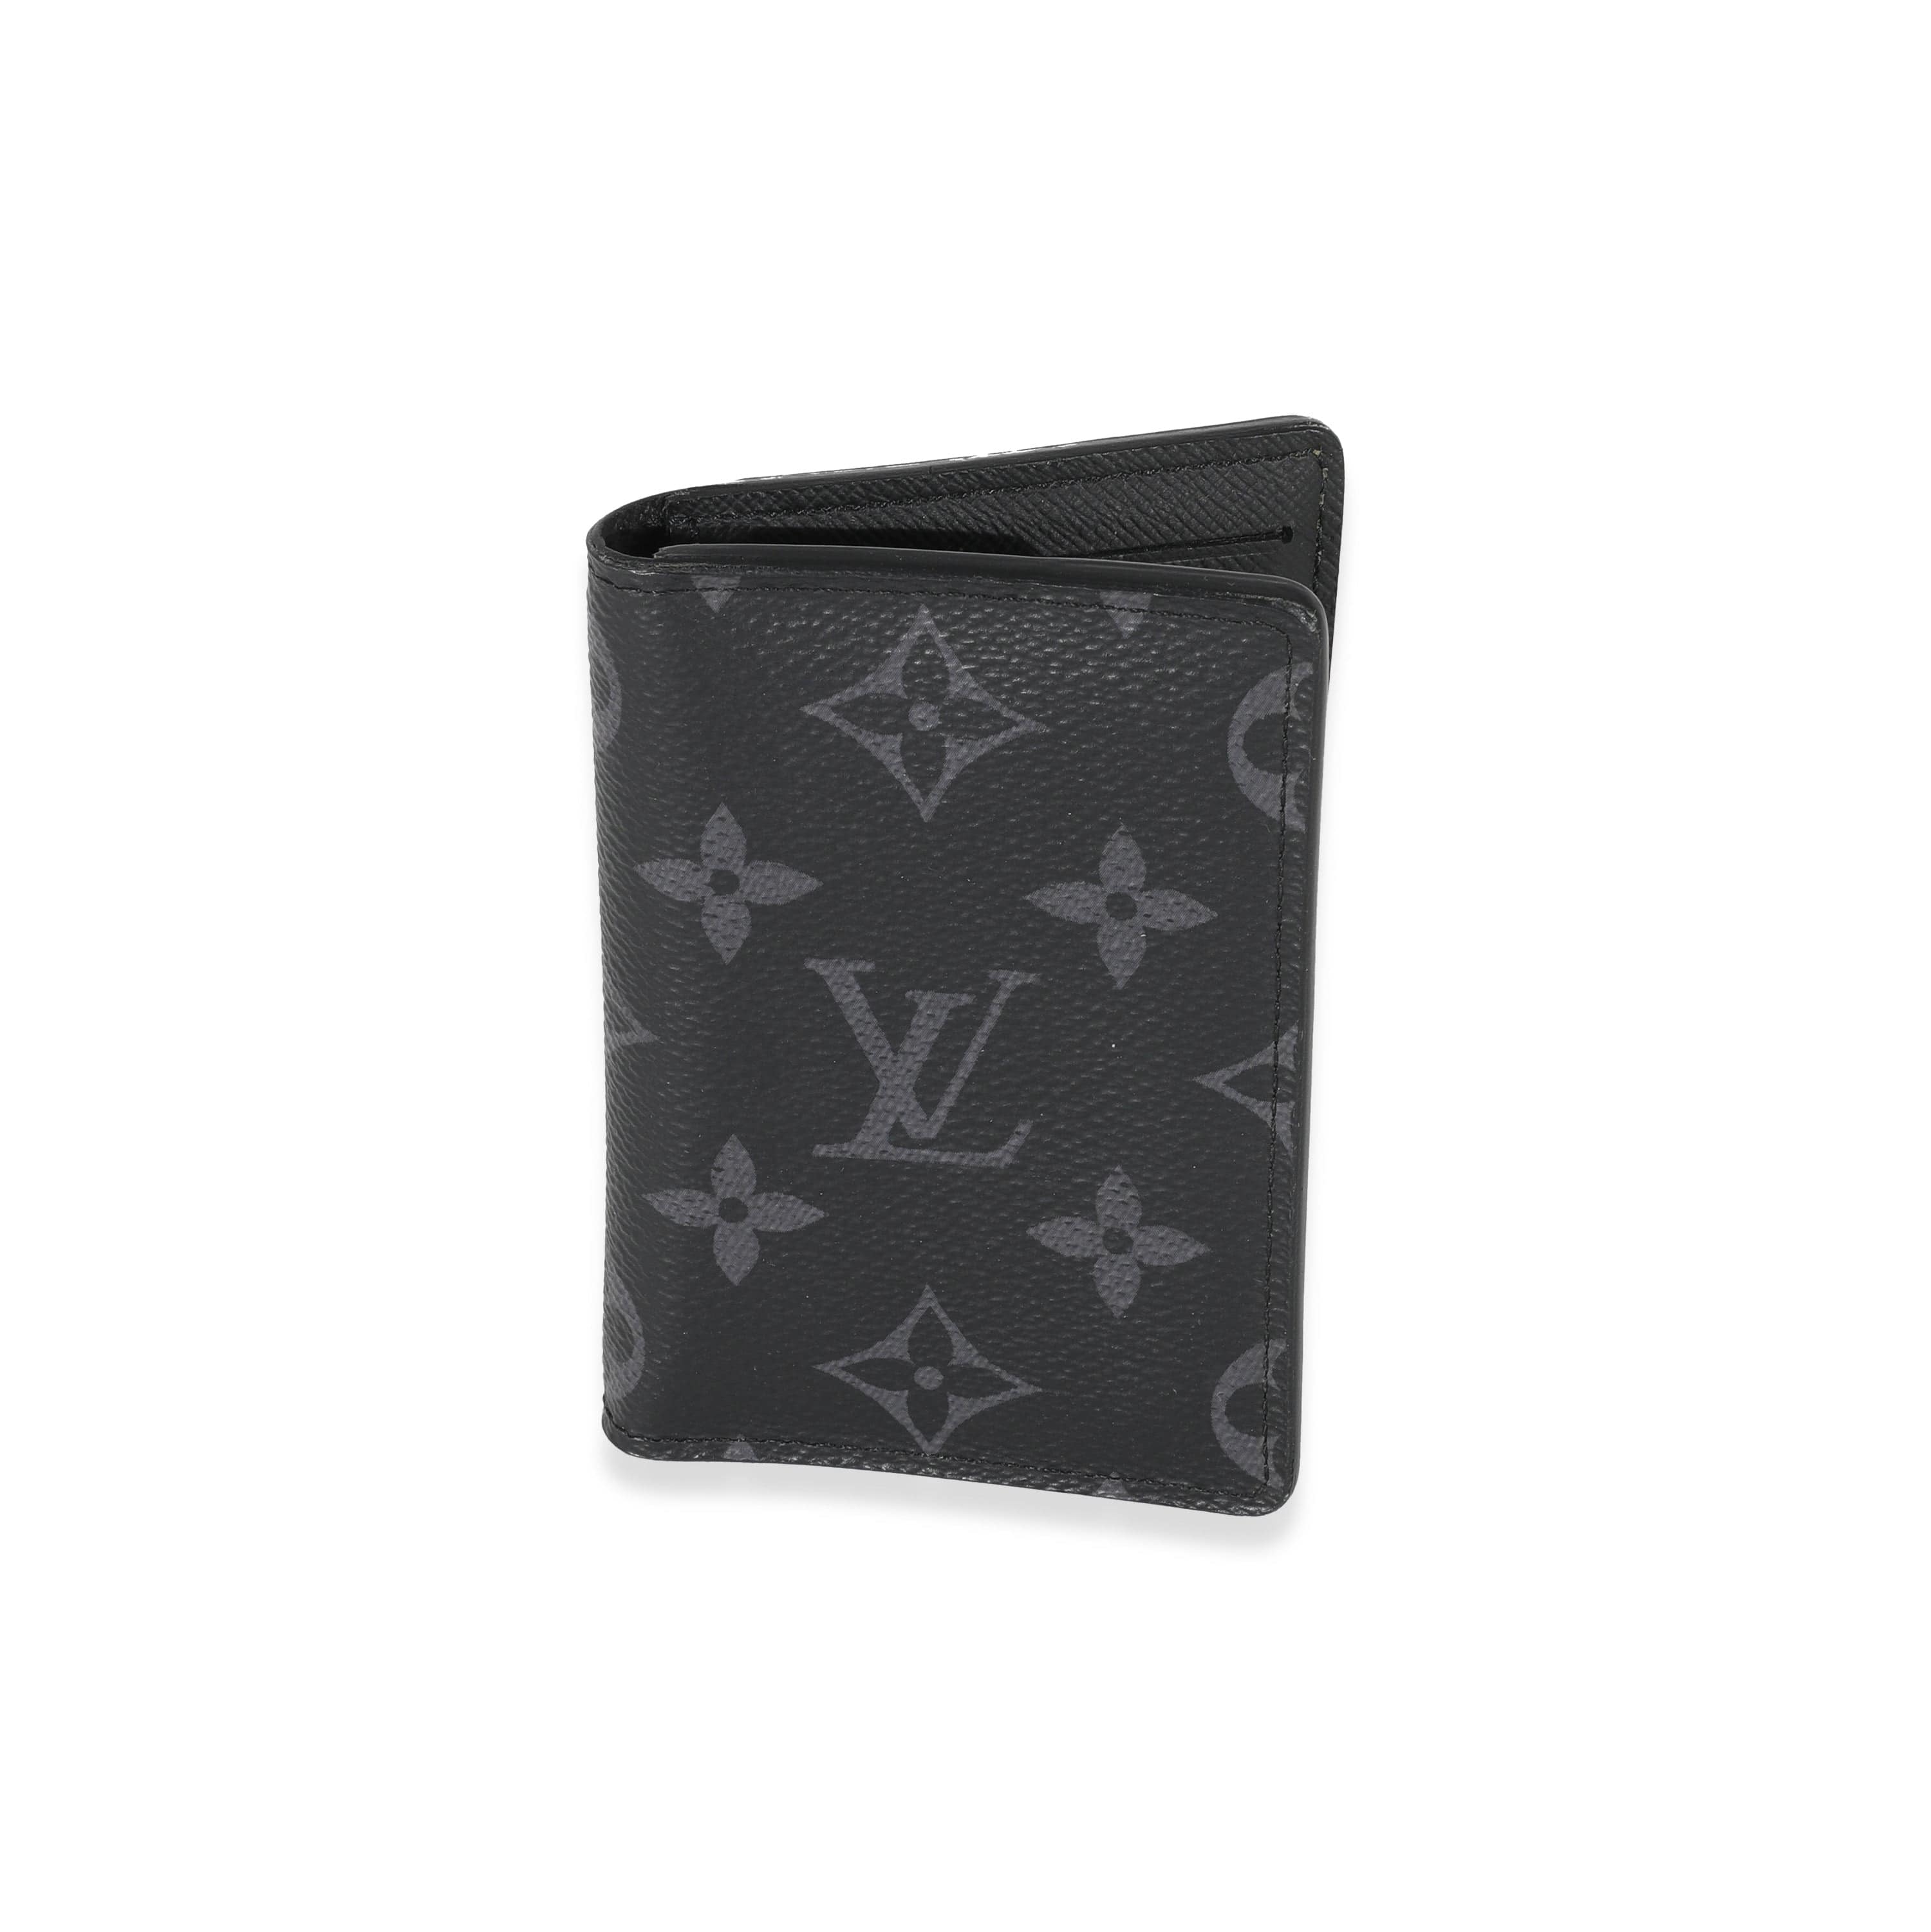 Louis Vuitton - Clutch Box Bag - Monogram Canvas - Eclipse - Unisex - Luxury